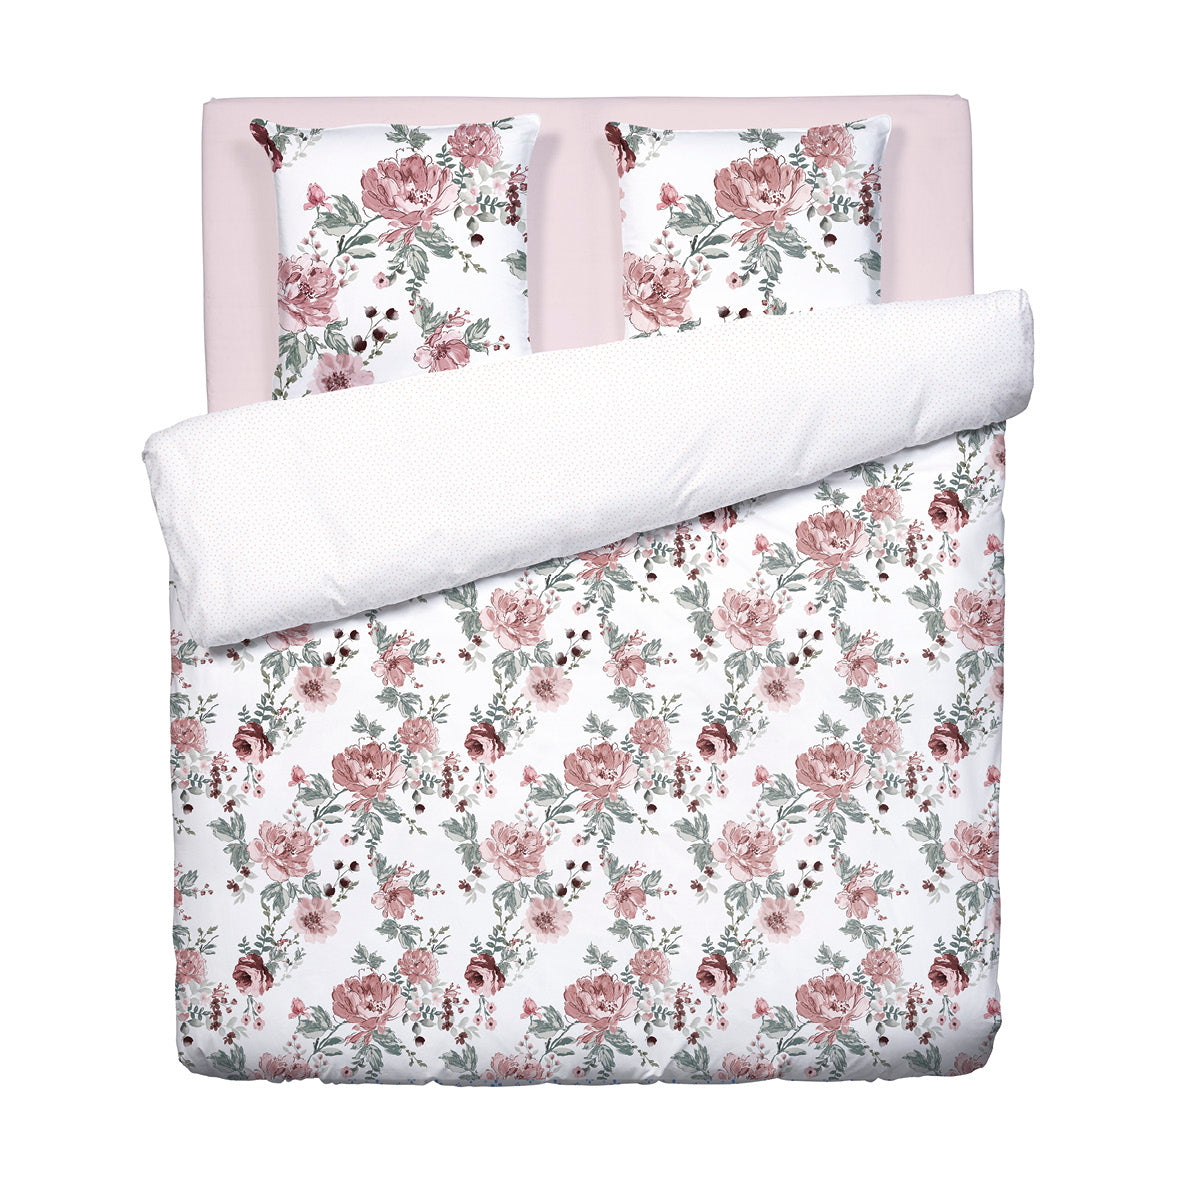 Duvet cover + pillowcase(s) cotton satin - Peony white